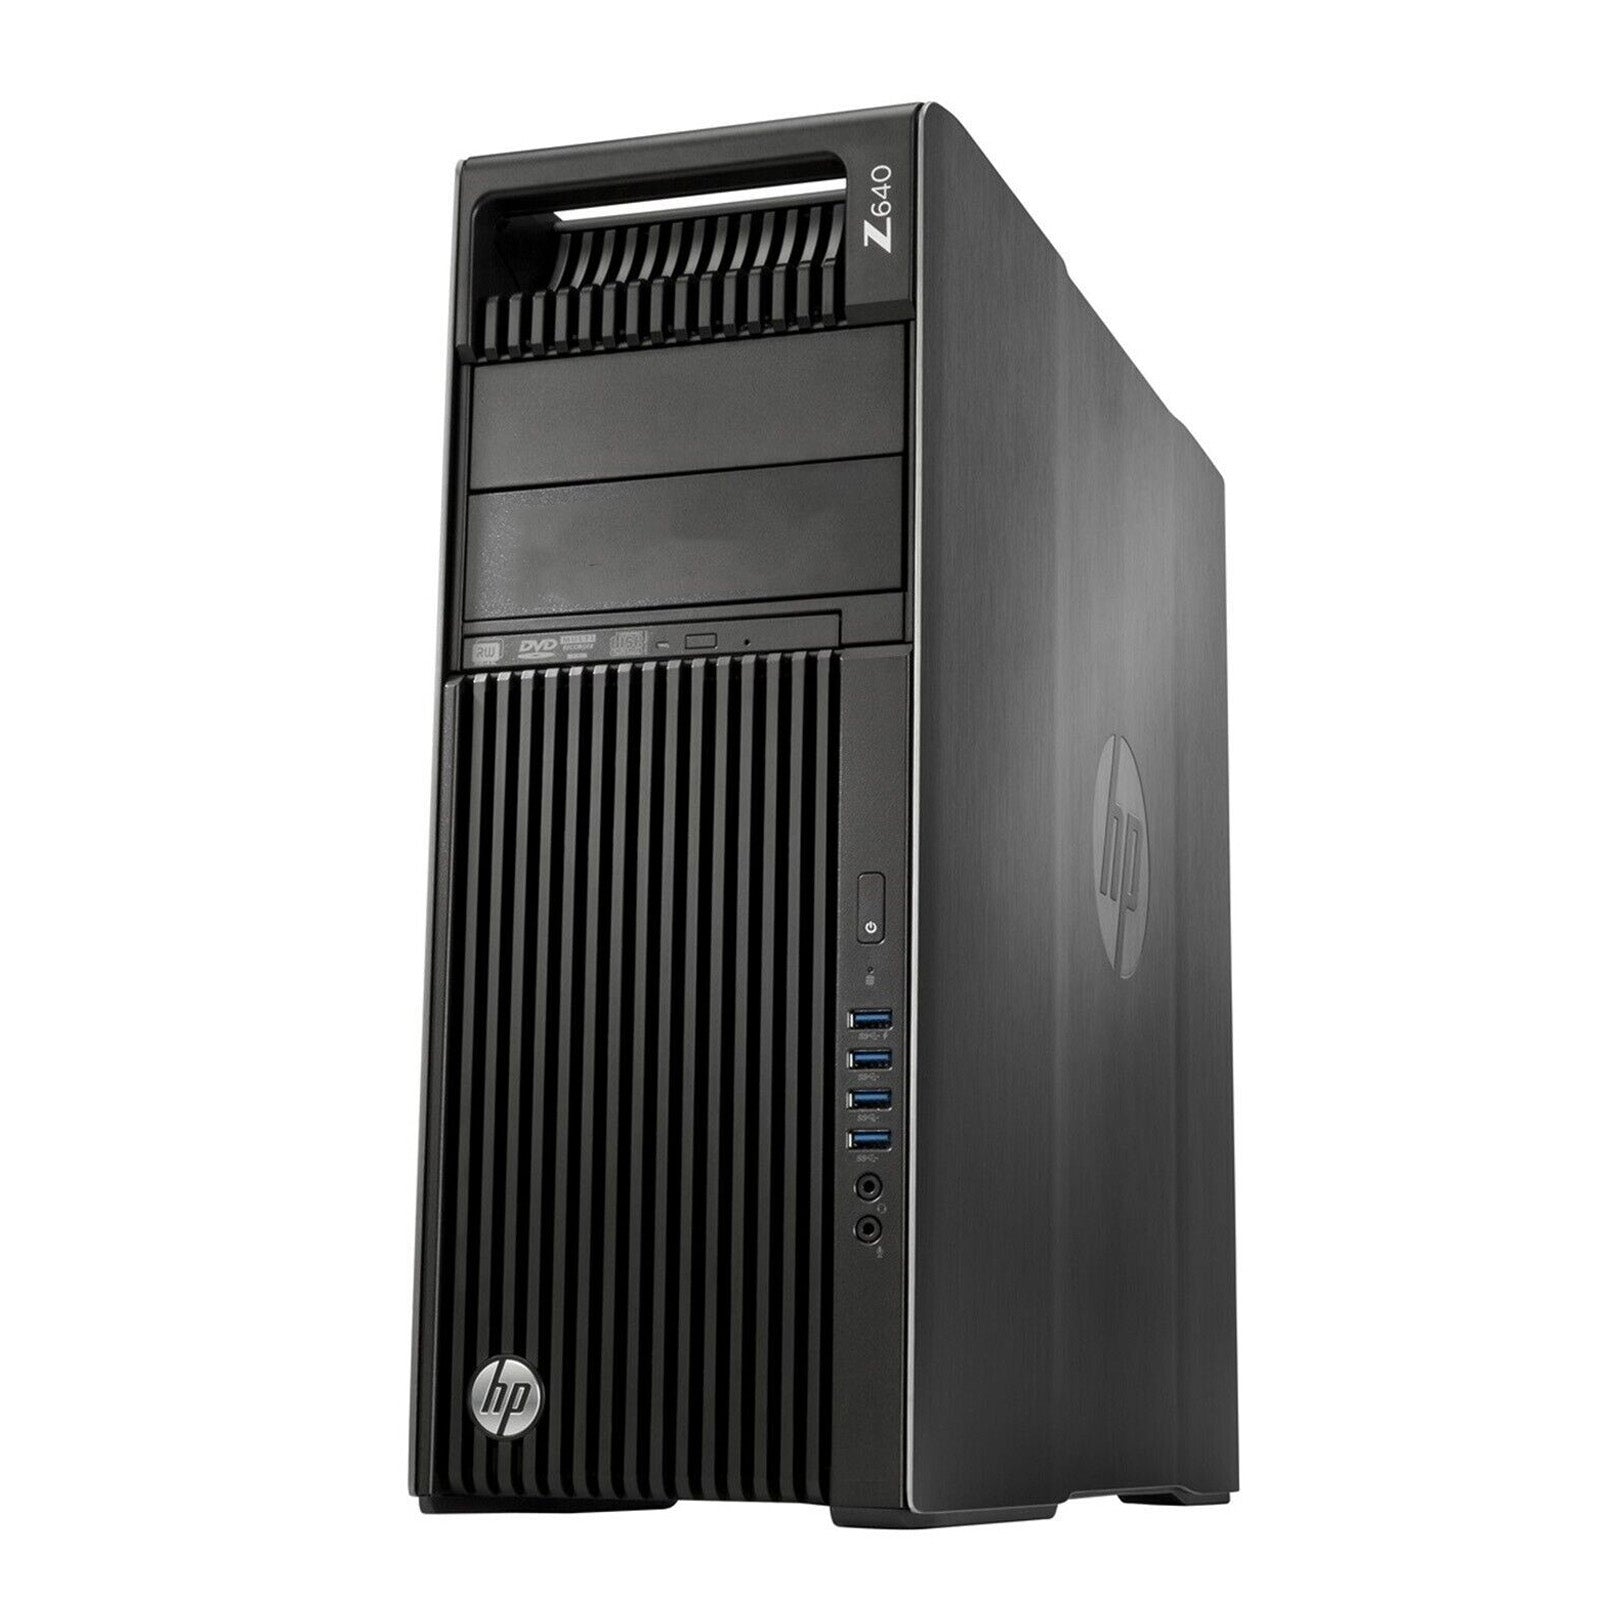 HP Z640 Tower PC: 22 Core Xeon E5-2699 v4, 32GB RAM, 500GB, NVIDIA,  Warranty VAT